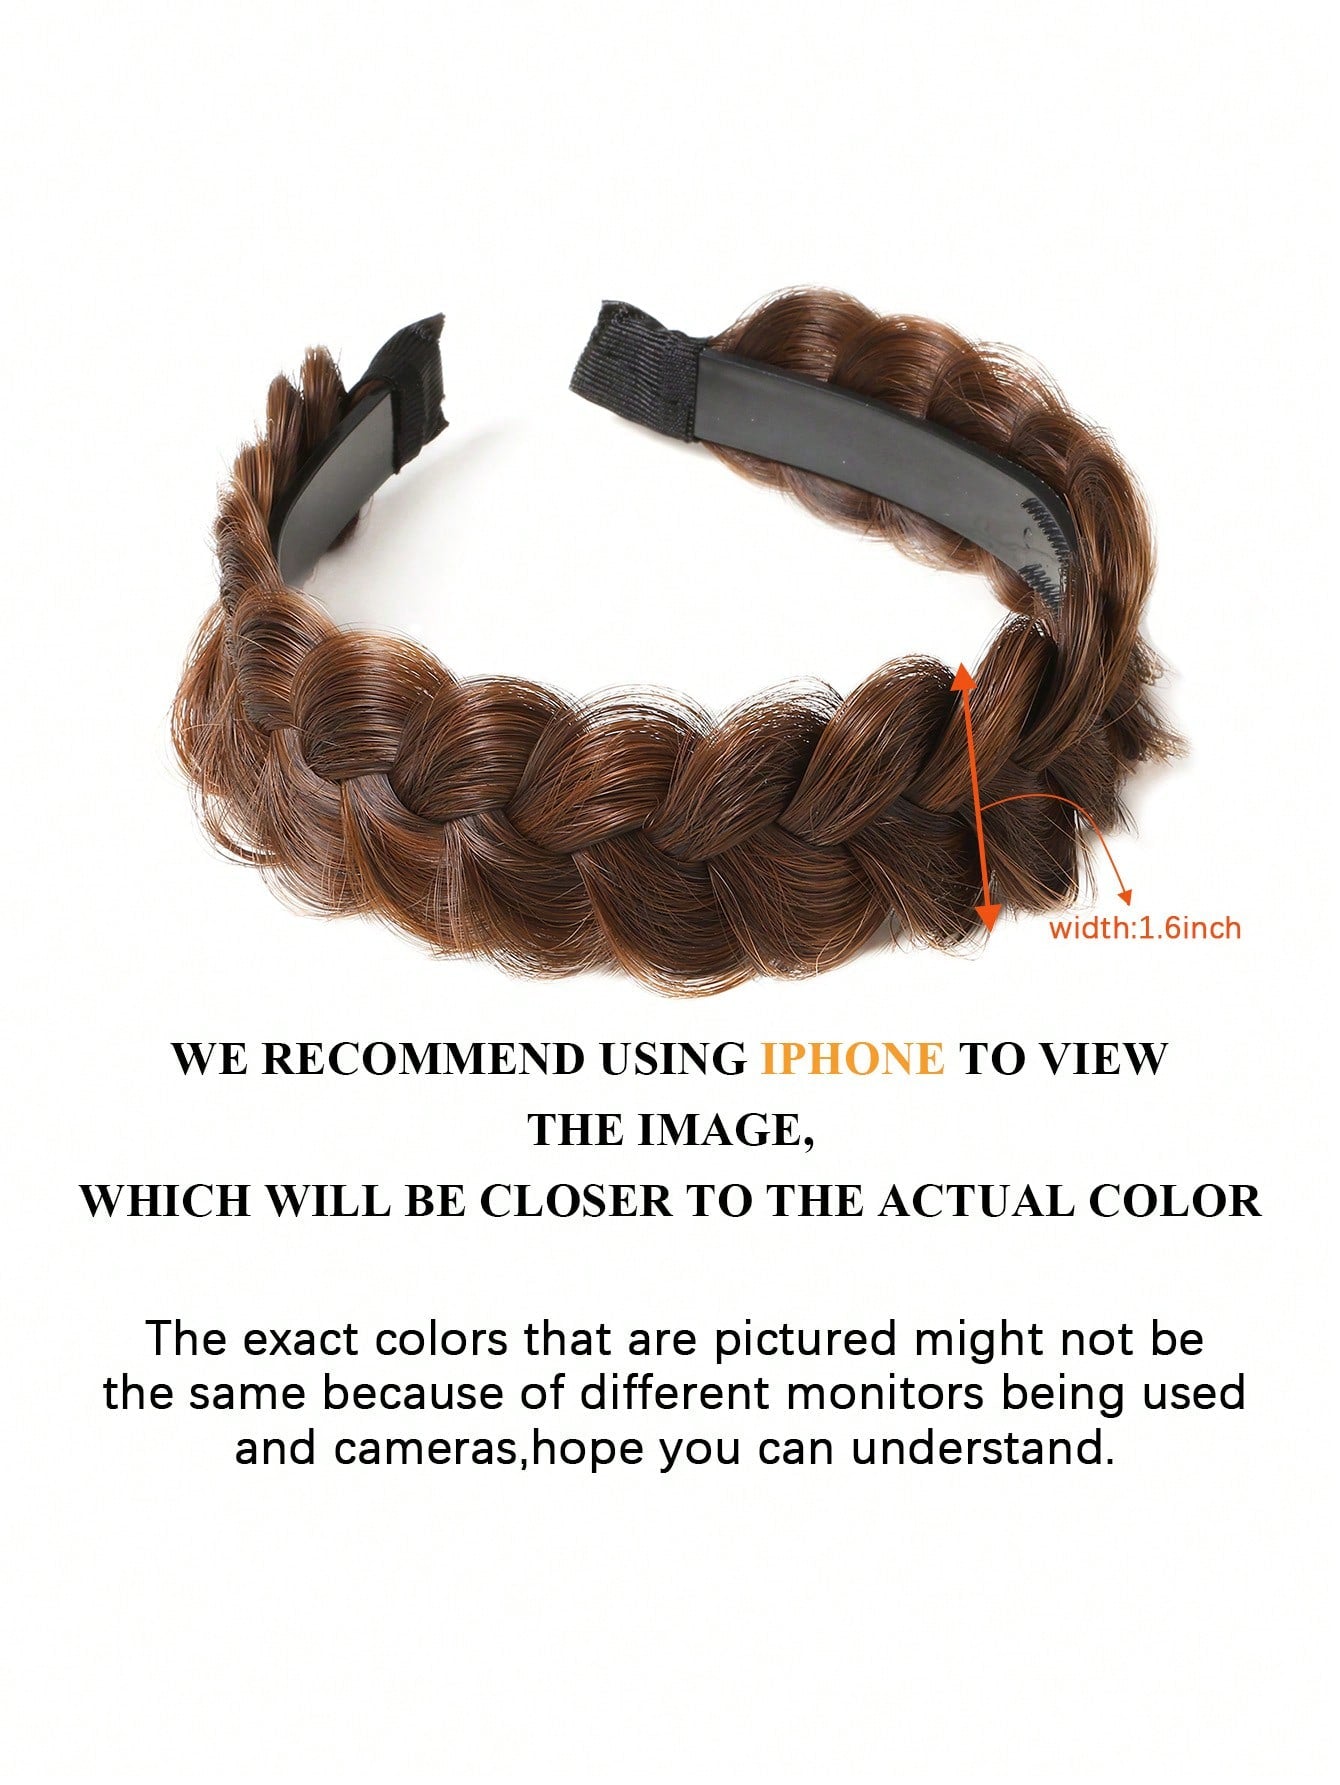 French Braid Headband